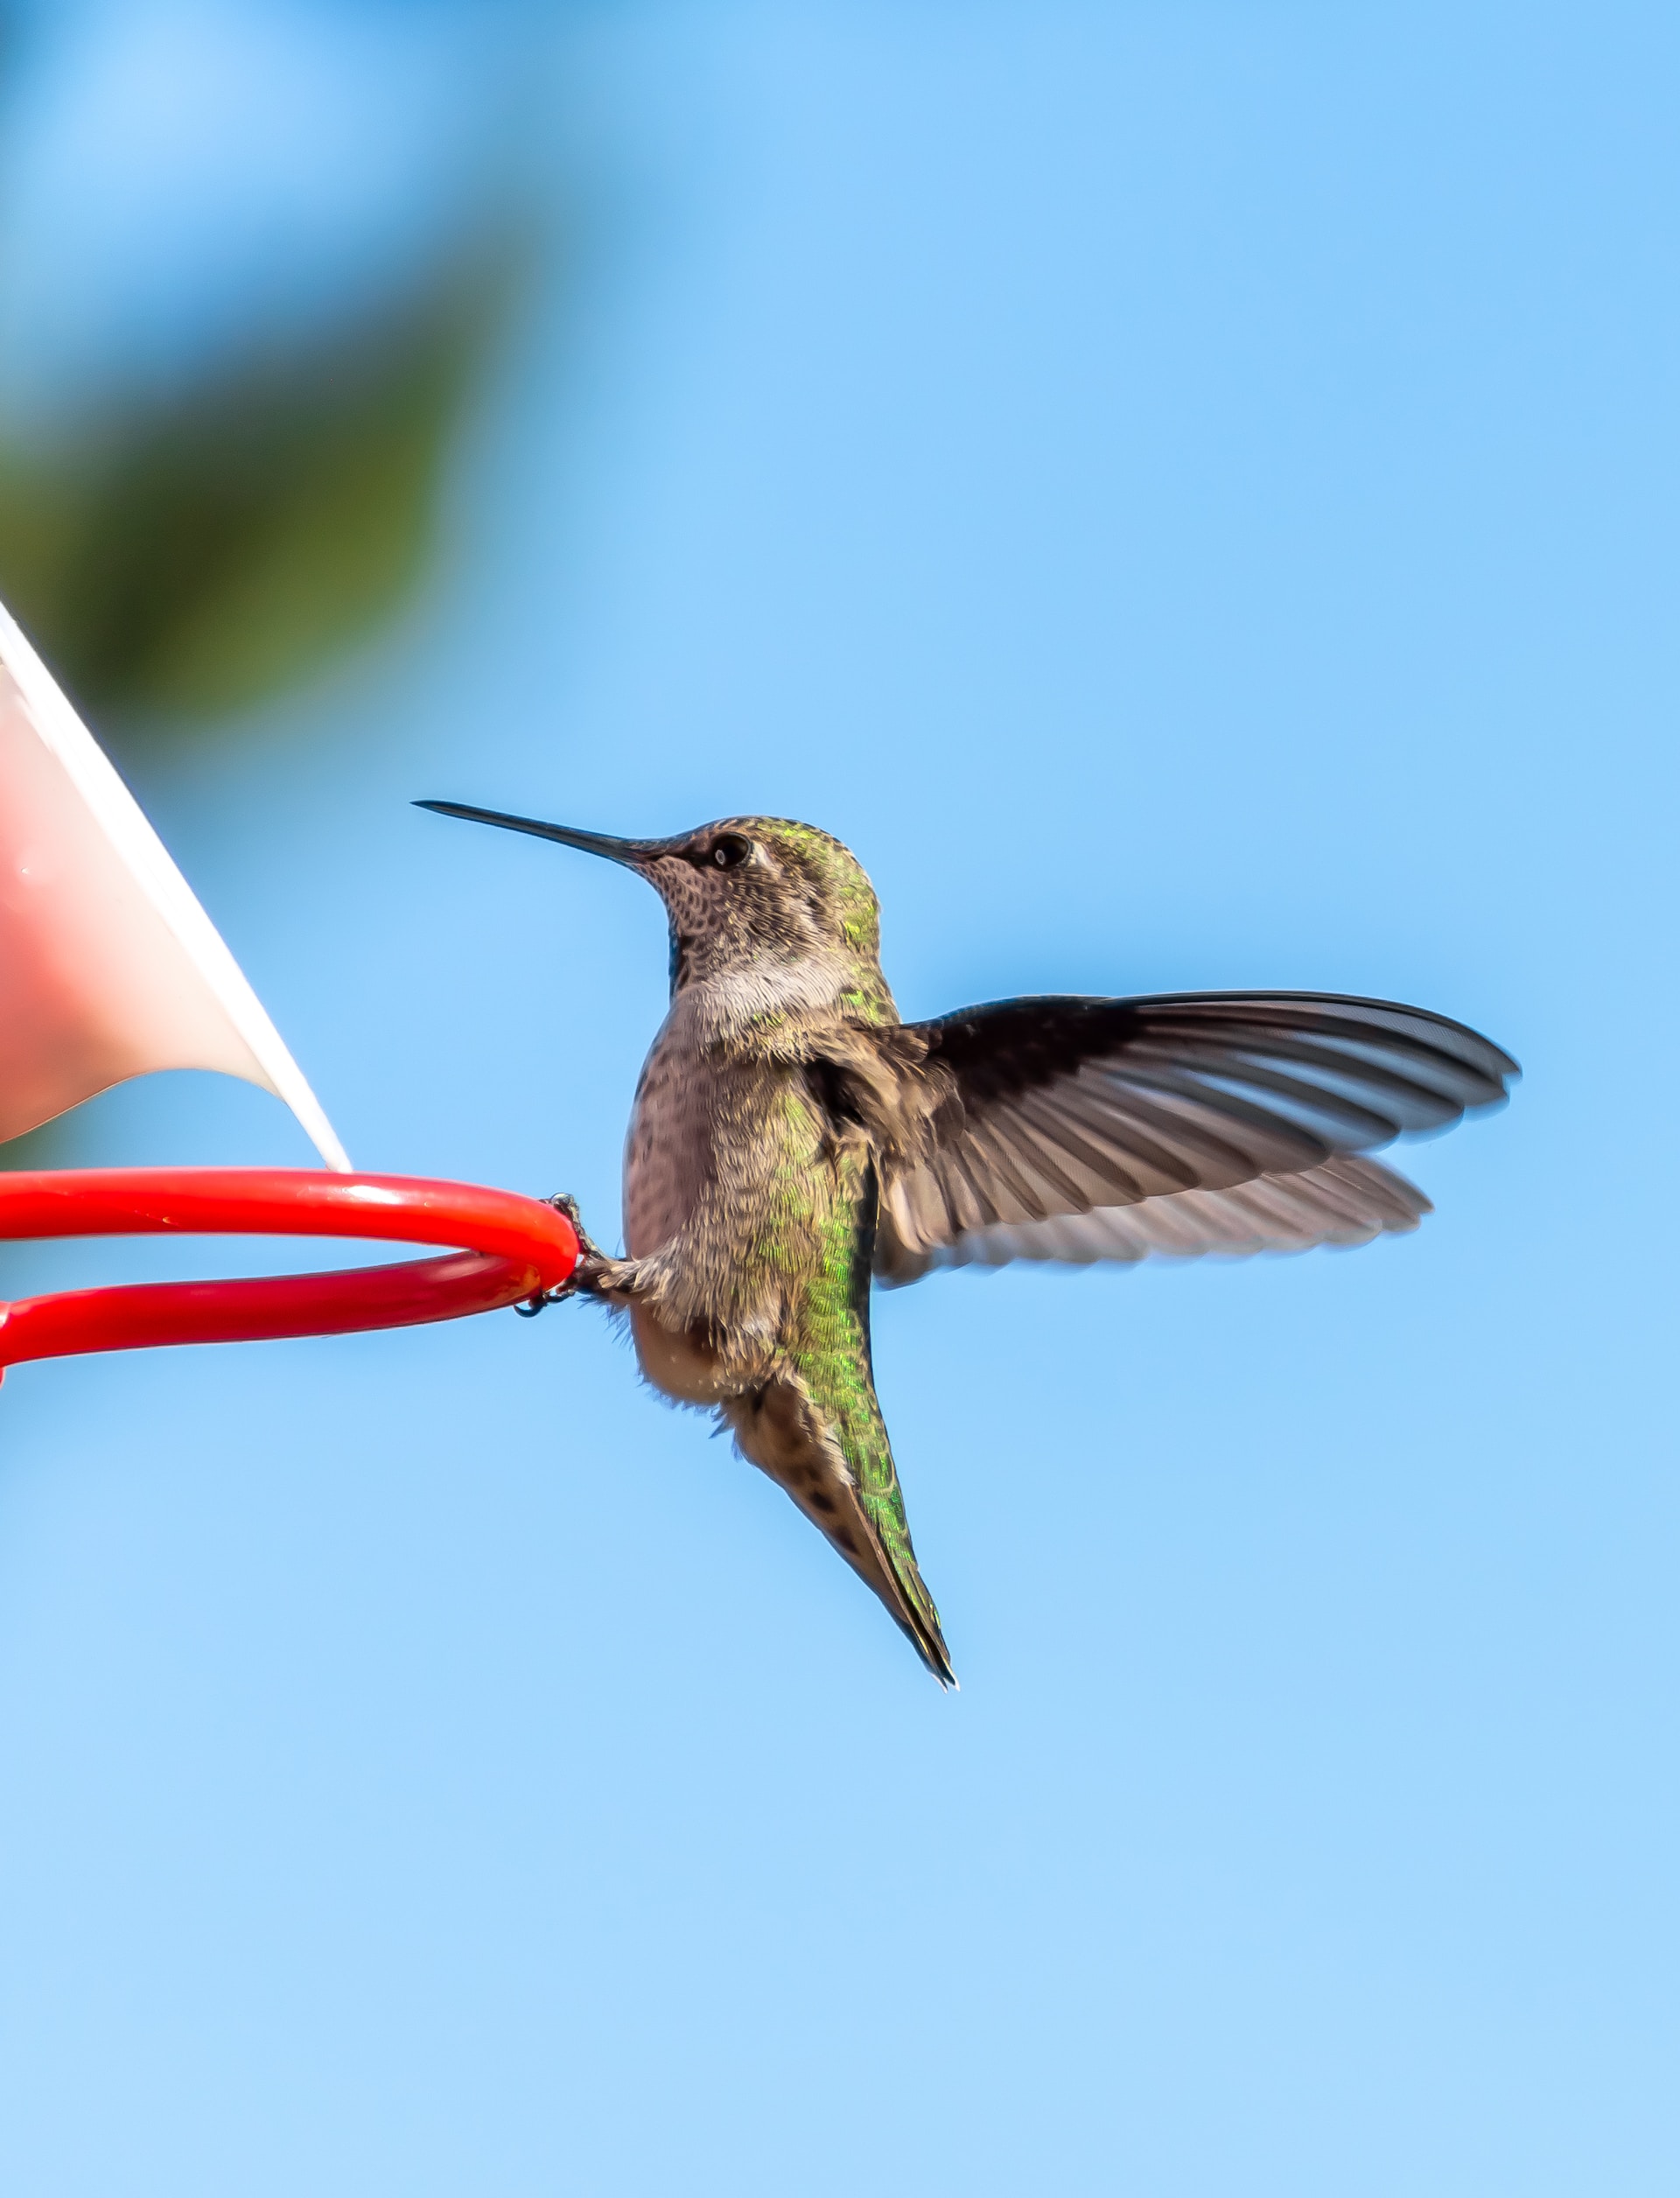 Hummingbird mid-flight